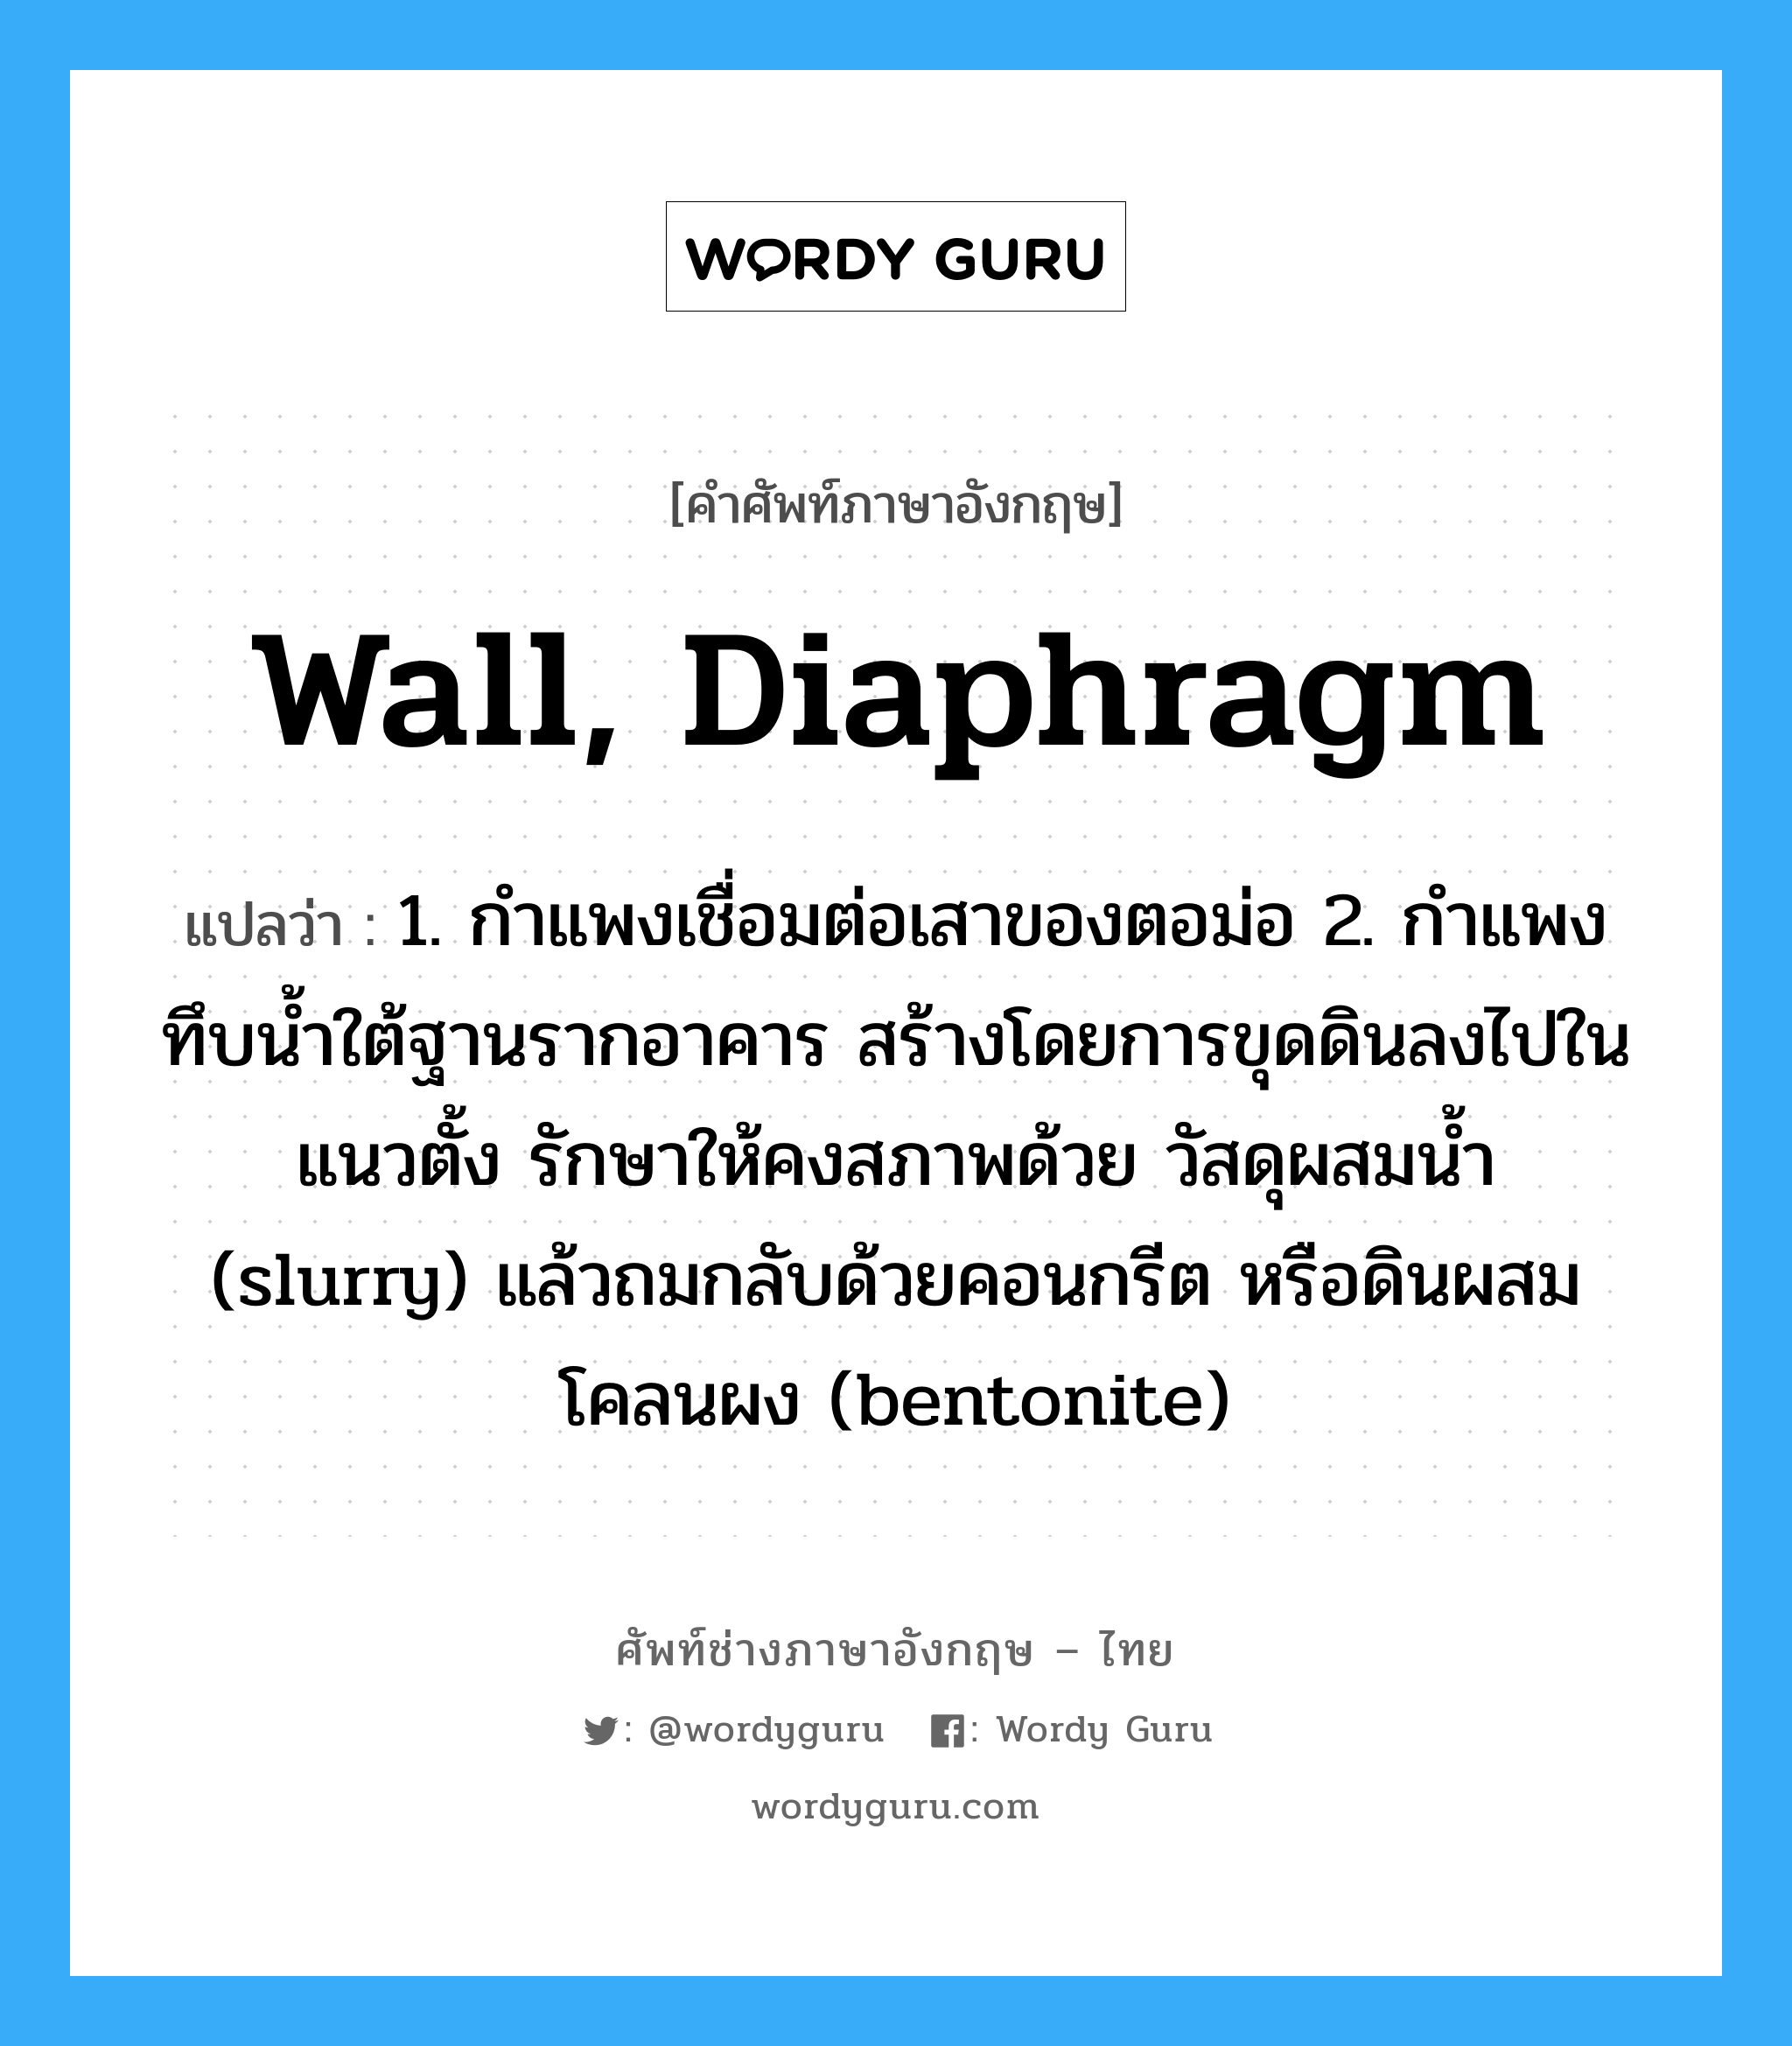 wall, diaphragm แปลว่า?, คำศัพท์ช่างภาษาอังกฤษ - ไทย wall, diaphragm คำศัพท์ภาษาอังกฤษ wall, diaphragm แปลว่า 1. กำแพงเชื่อมต่อเสาของตอม่อ 2. กำแพงทึบน้ำใต้ฐานรากอาคาร สร้างโดยการขุดดินลงไปในแนวตั้ง รักษาให้คงสภาพด้วย วัสดุผสมน้ำ (slurry) แล้วถมกลับด้วยคอนกรีต หรือดินผสมโคลนผง (bentonite)